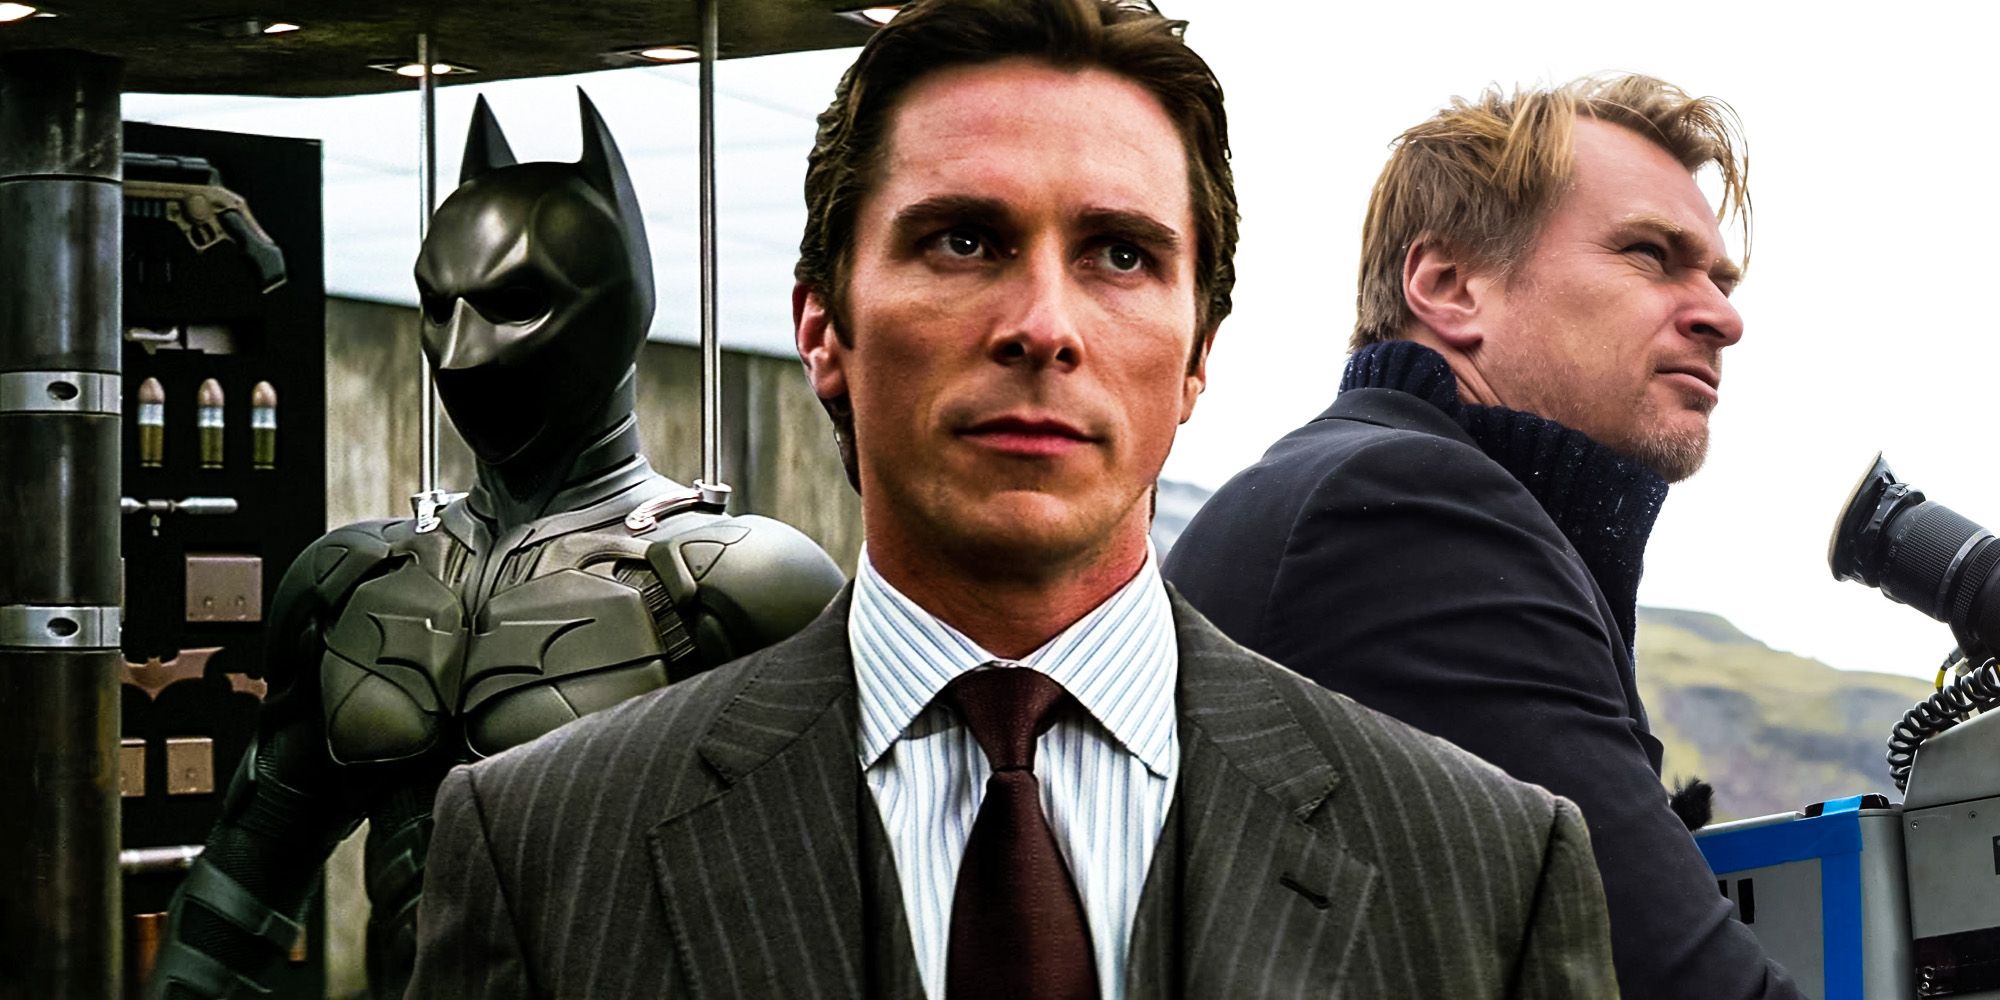 What If Bale & Nolan Had Made A 4th Batman Movie?